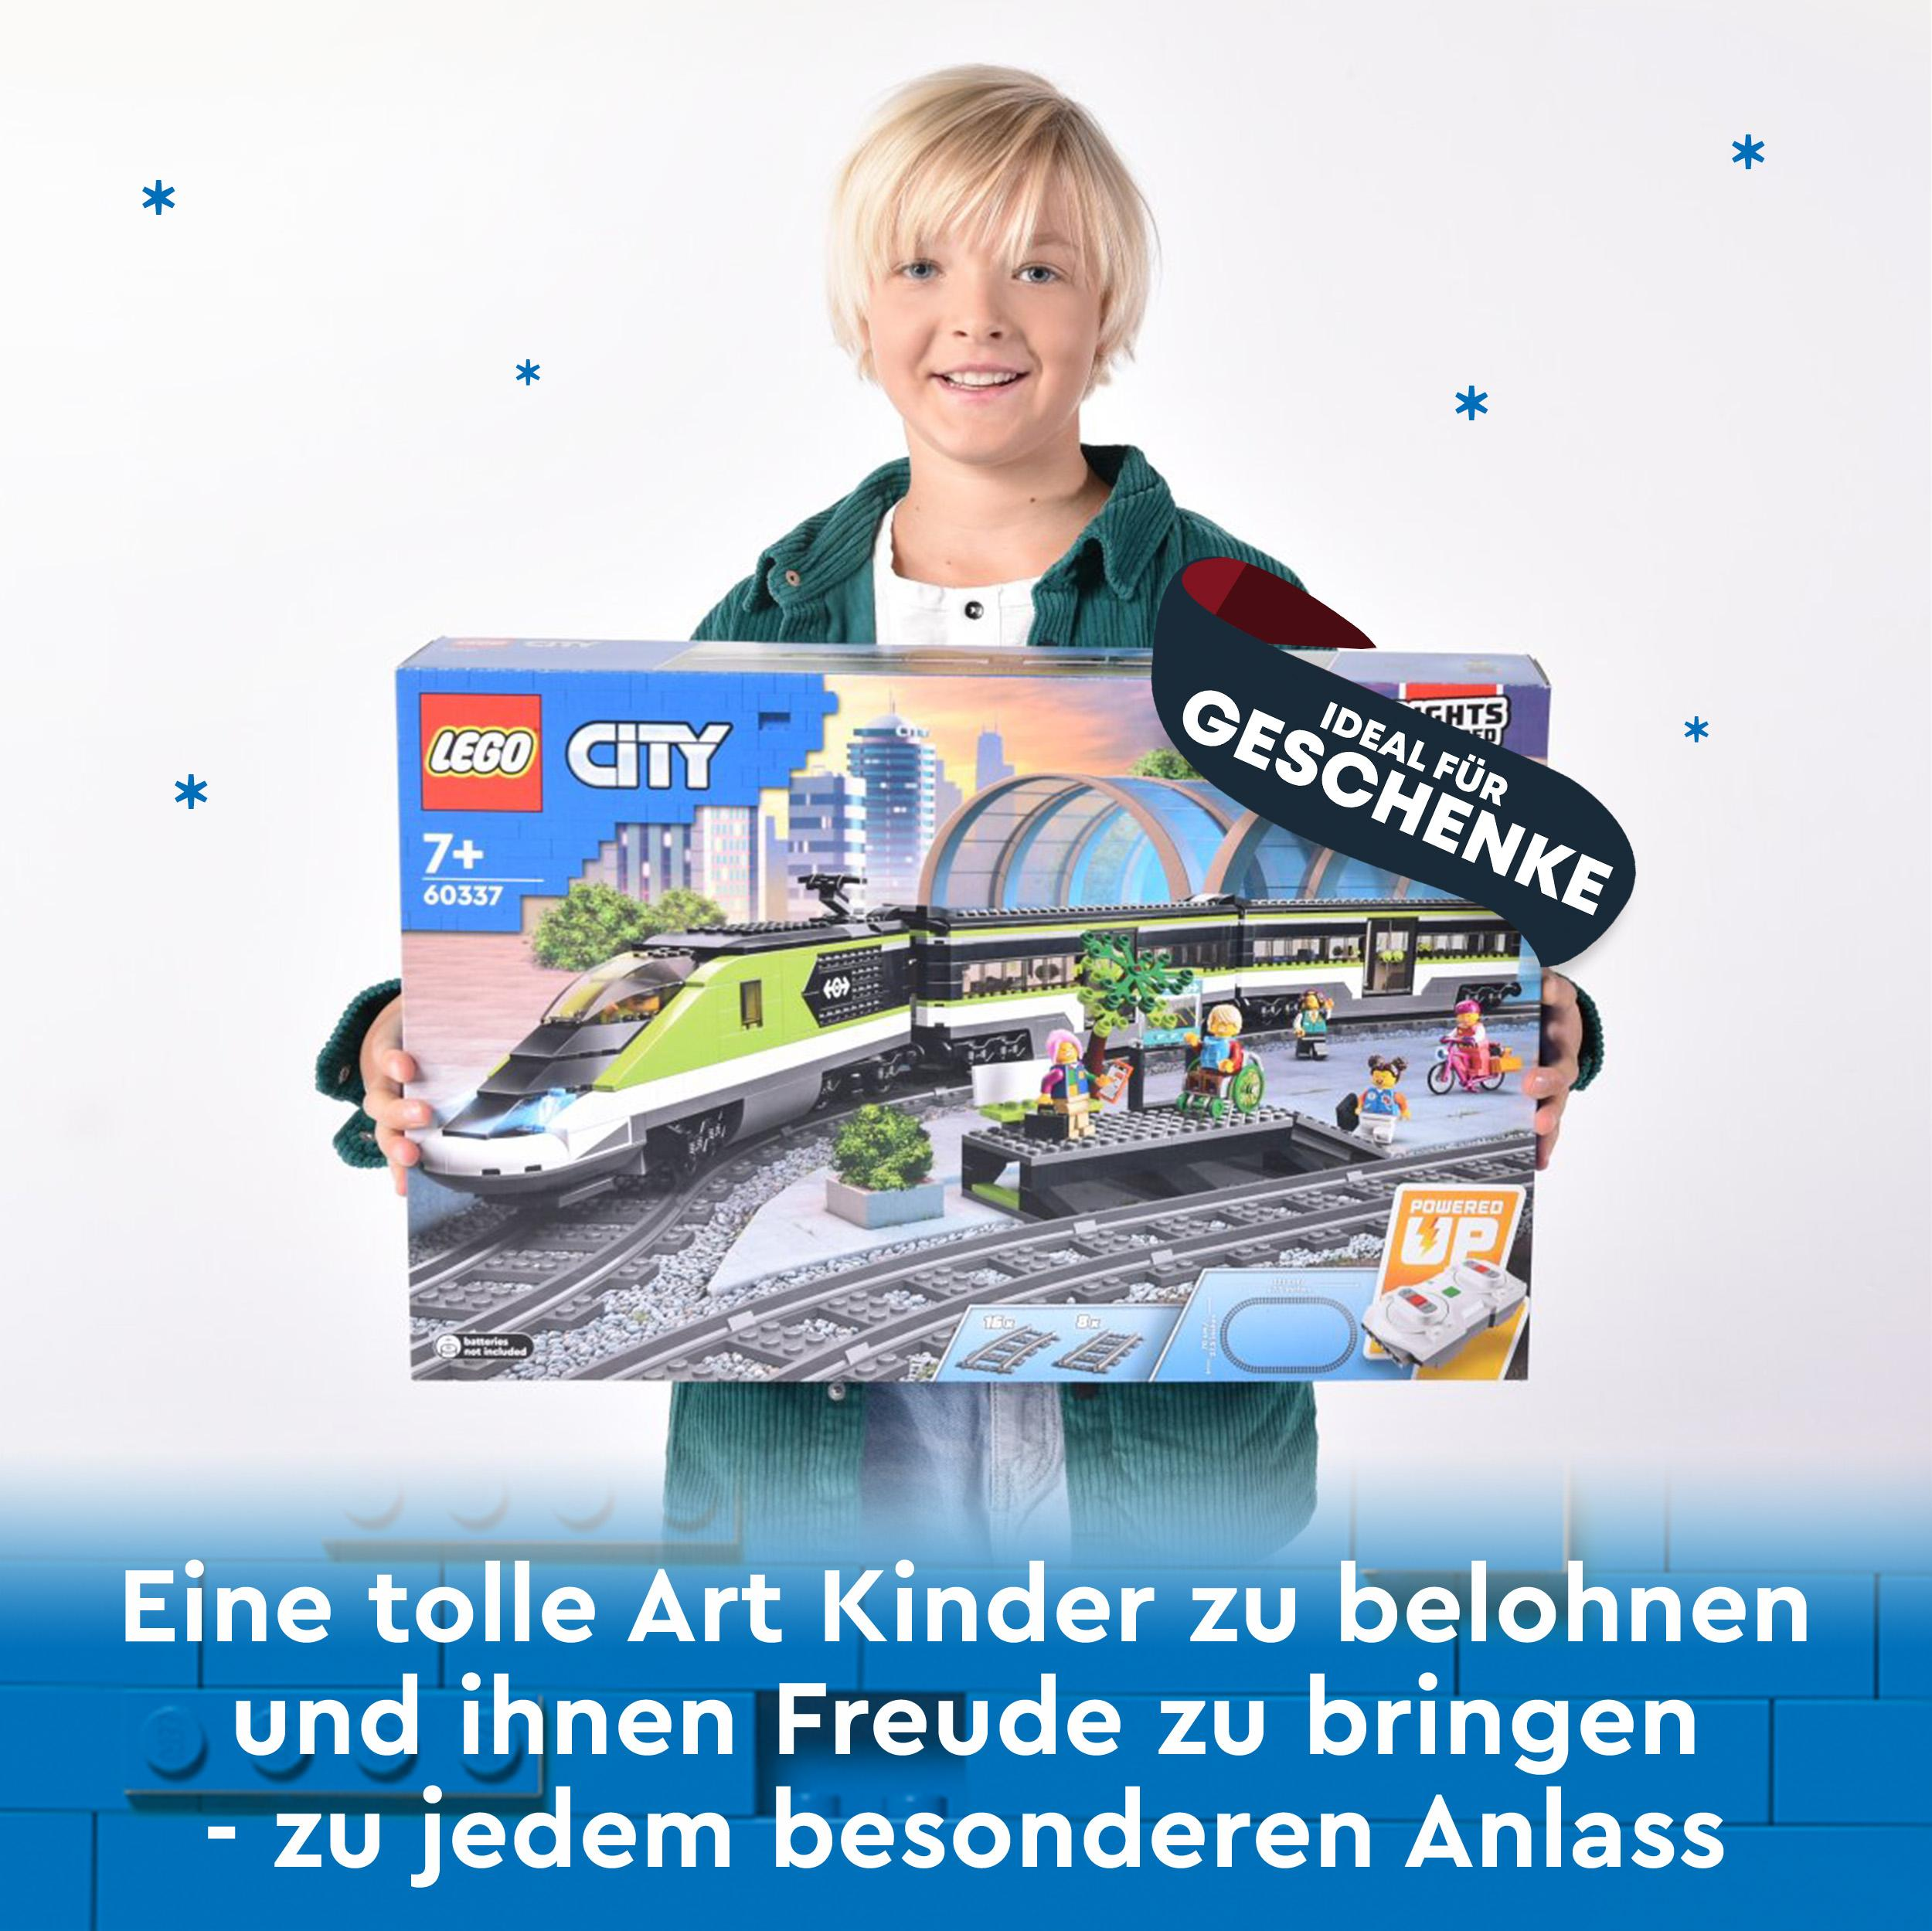 LEGO City 60337 Personen-Schnellzug Mehrfarbig Bausatz